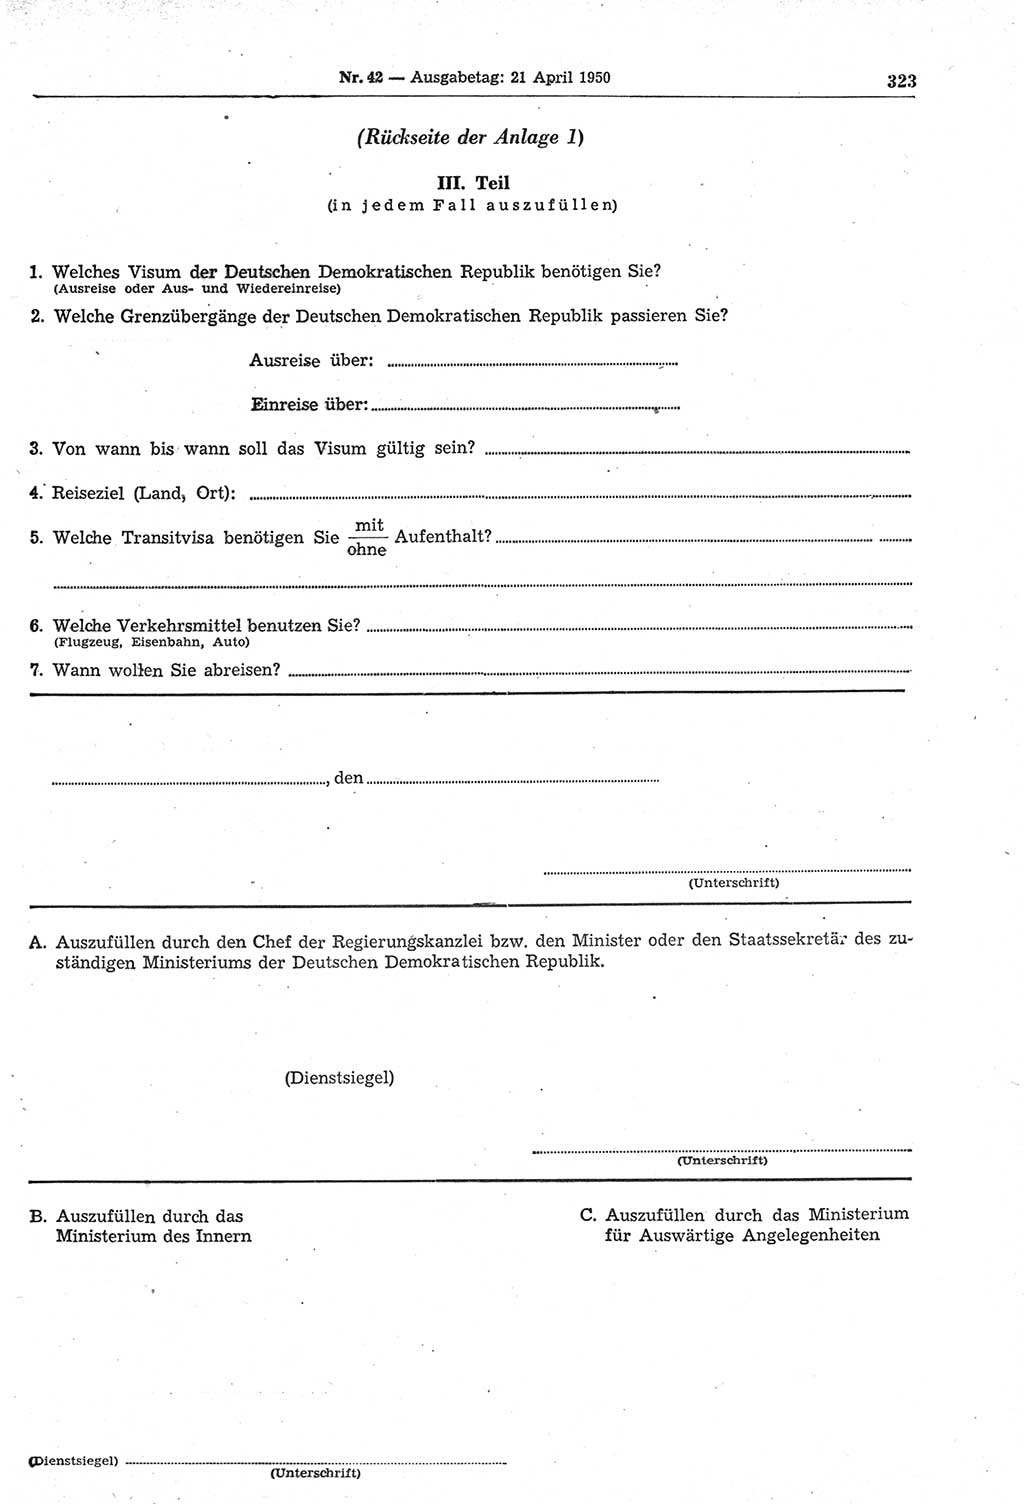 Gesetzblatt (GBl.) der Deutschen Demokratischen Republik (DDR) 1950, Seite 323 (GBl. DDR 1950, S. 323)